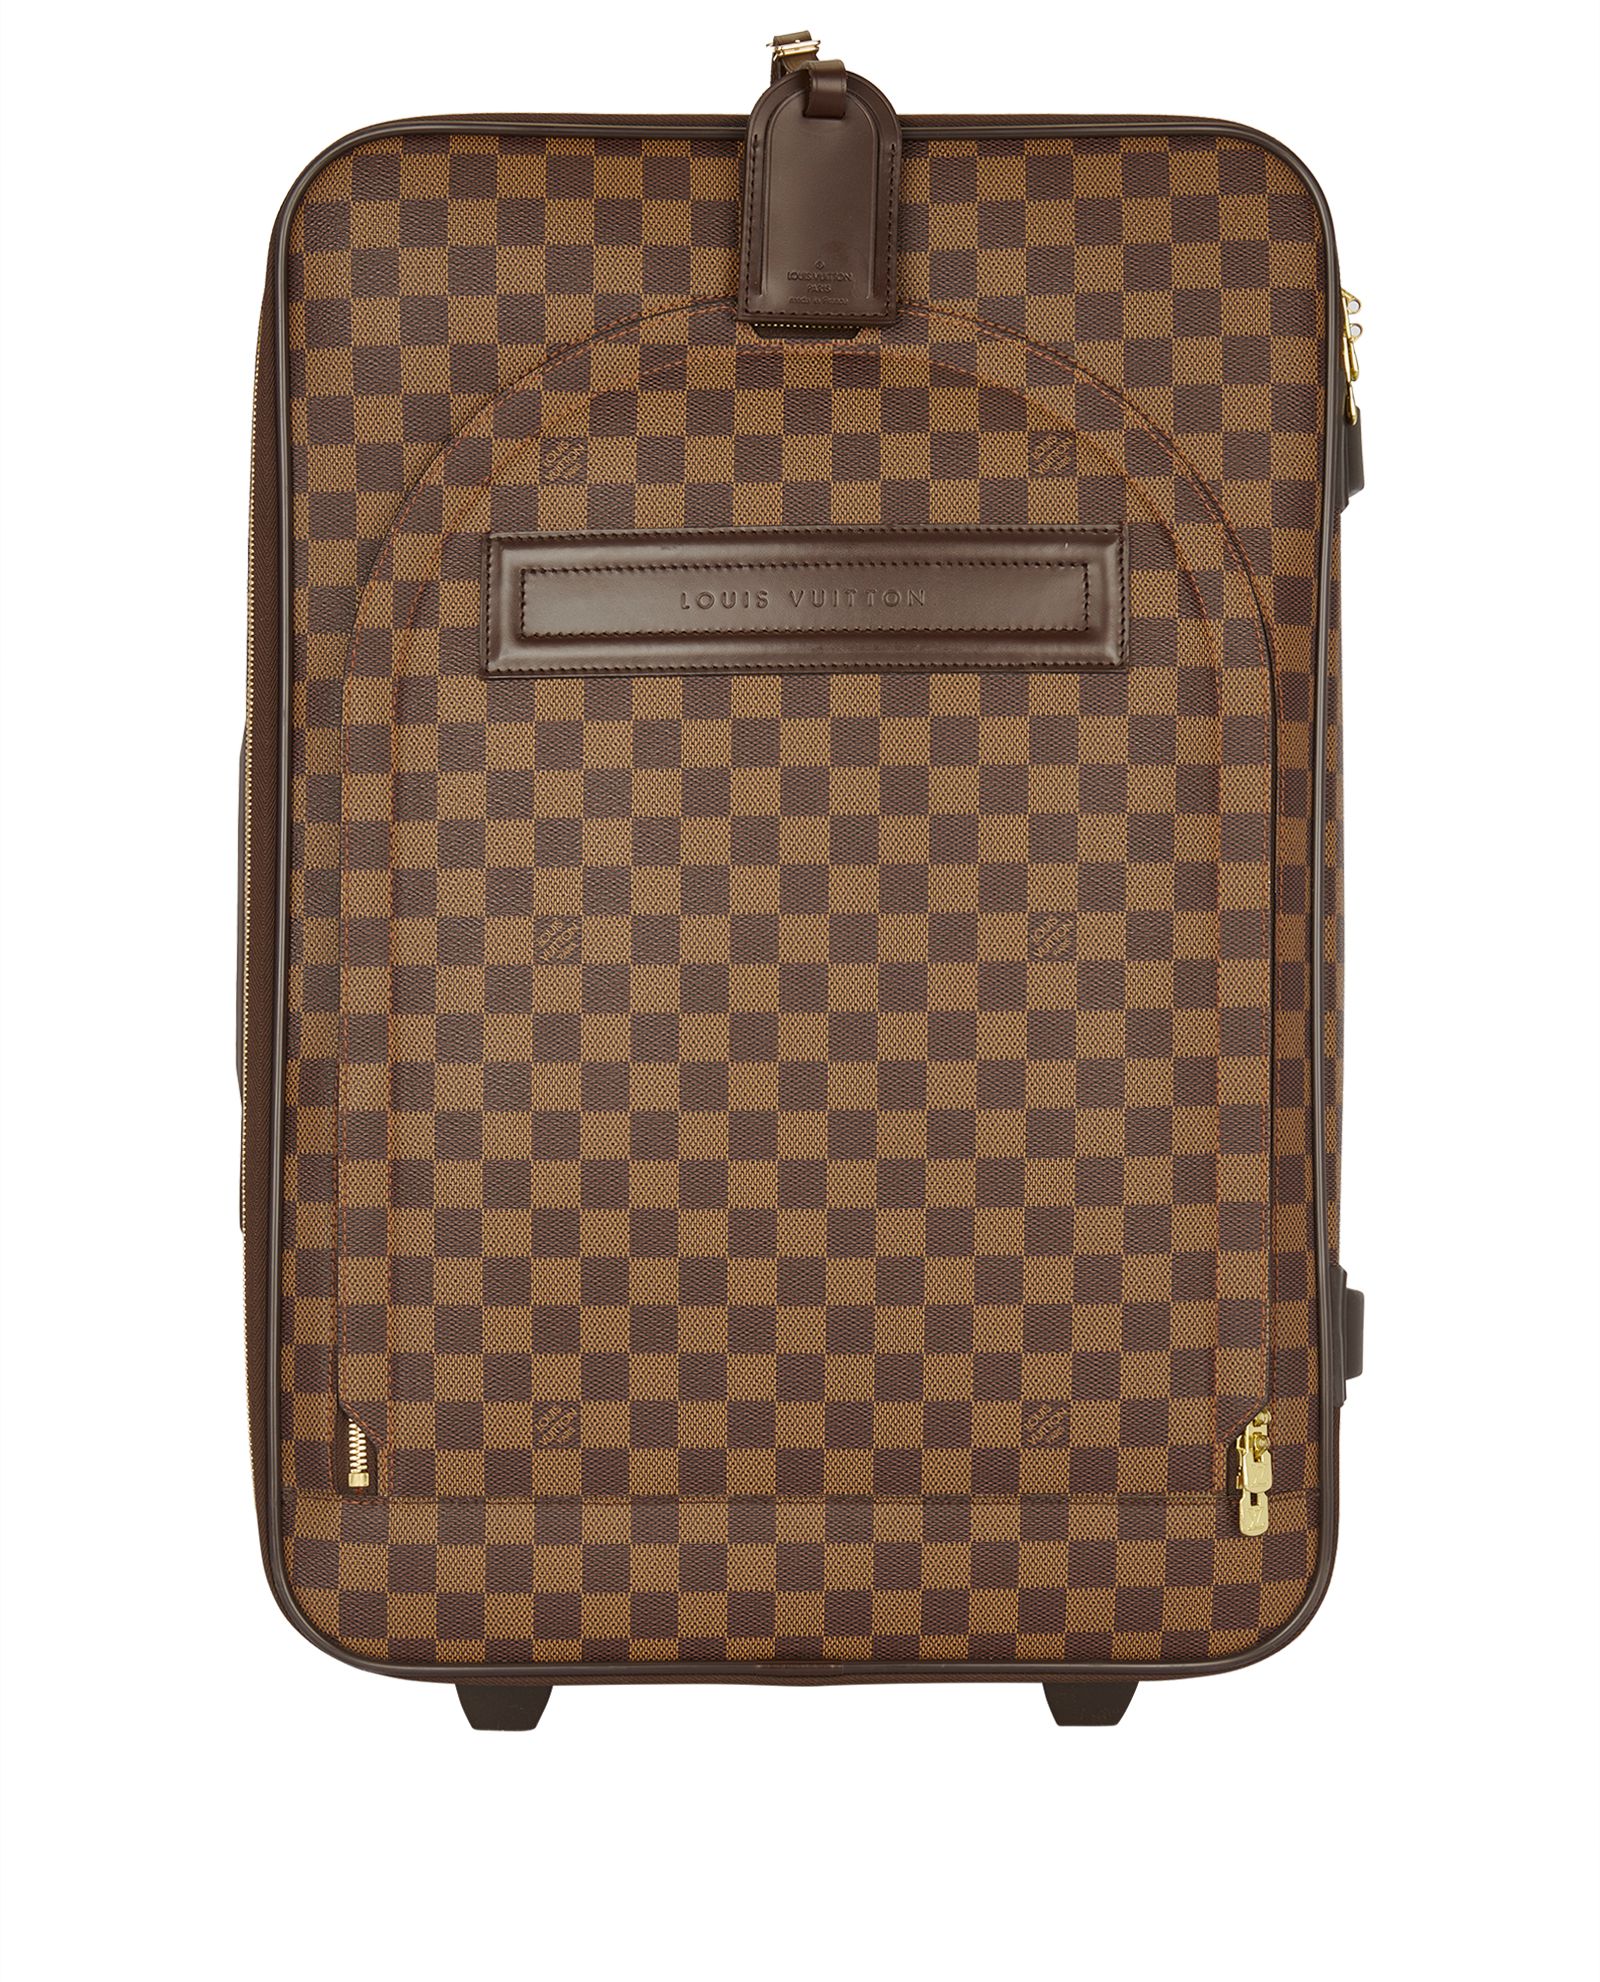 Authentic Louis Vuitton Damier Pegase 55 Travel Bag Suitcase